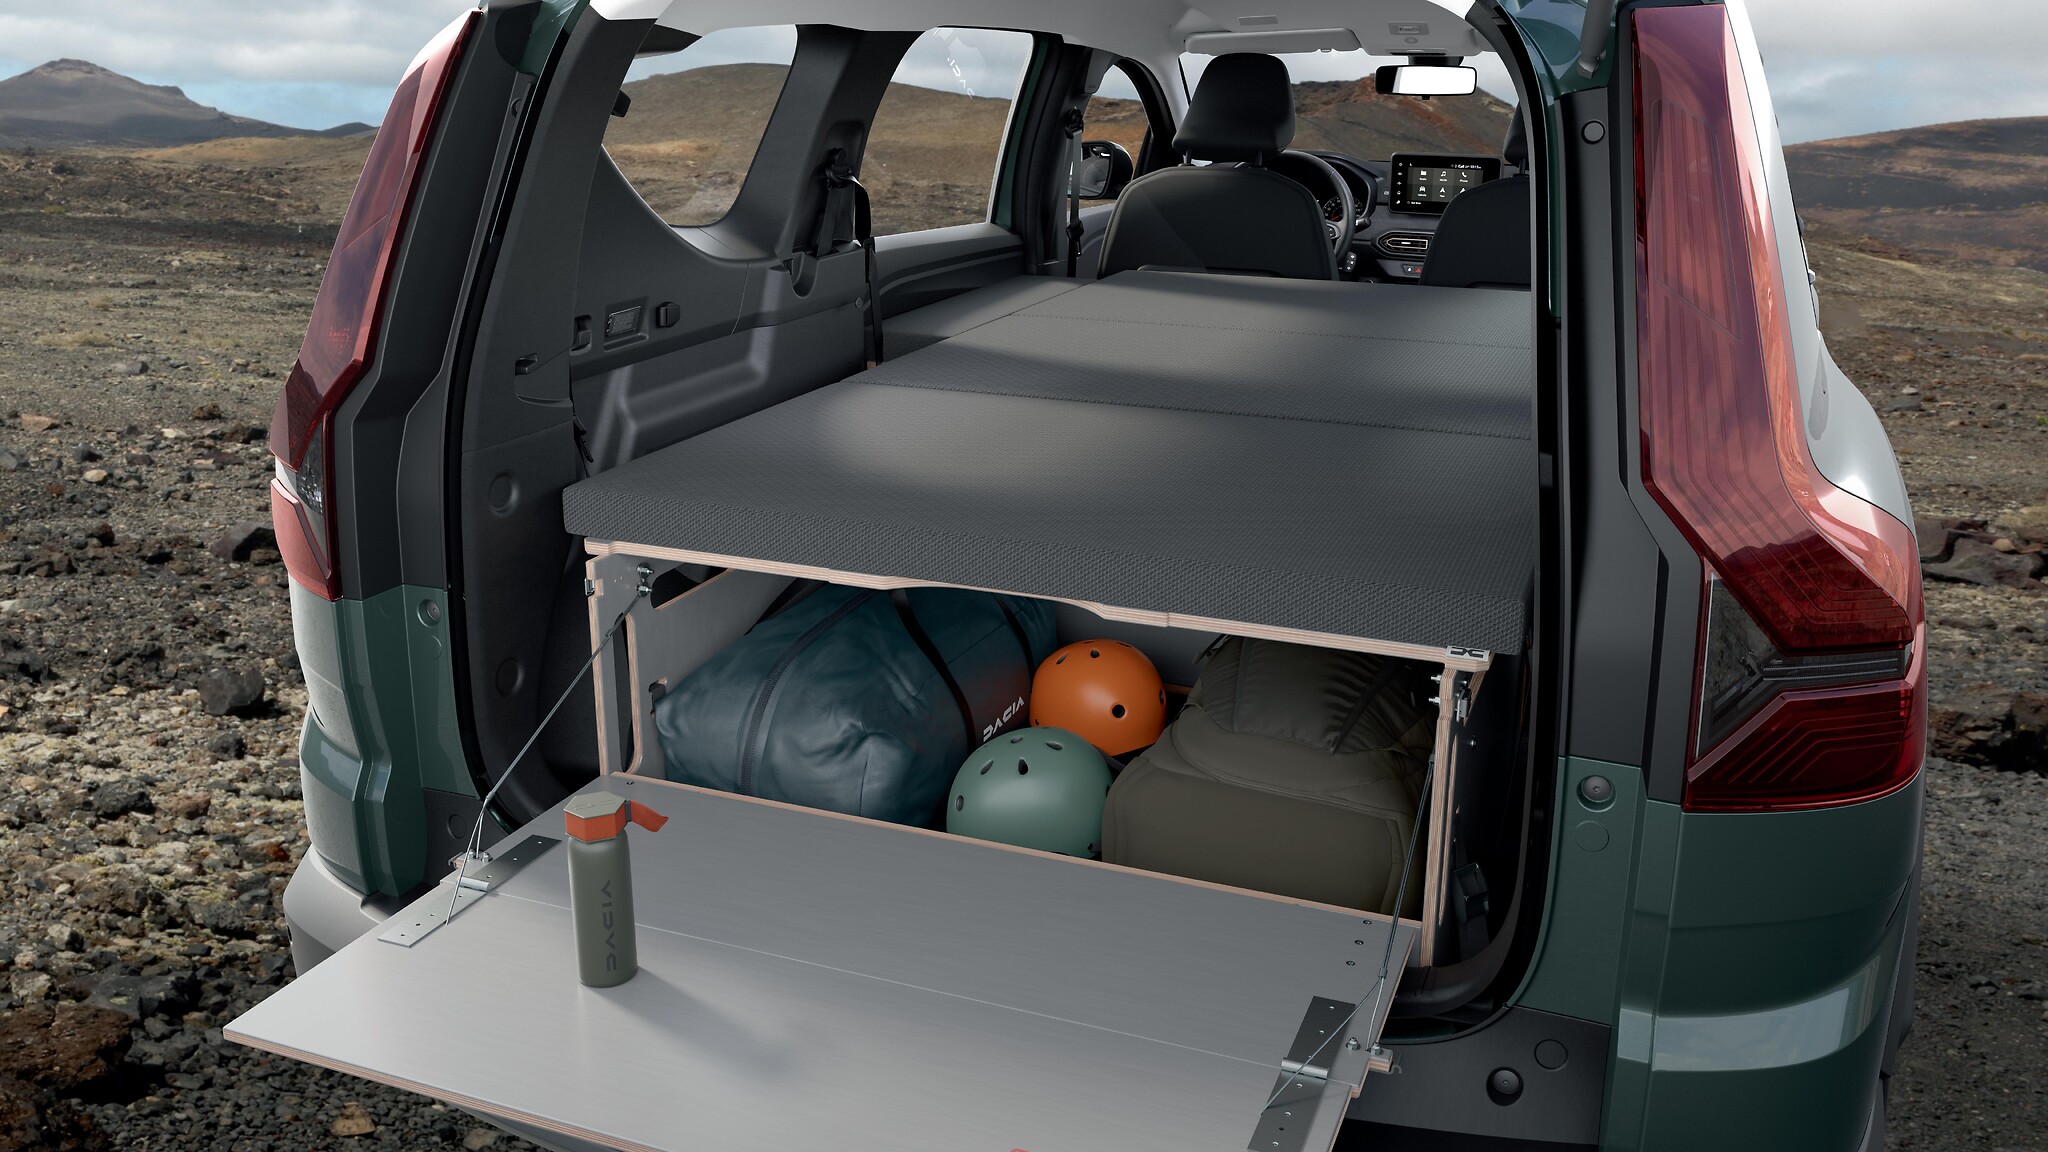 Matratze für Pack Sleep Innenausstattung Camping Dacia